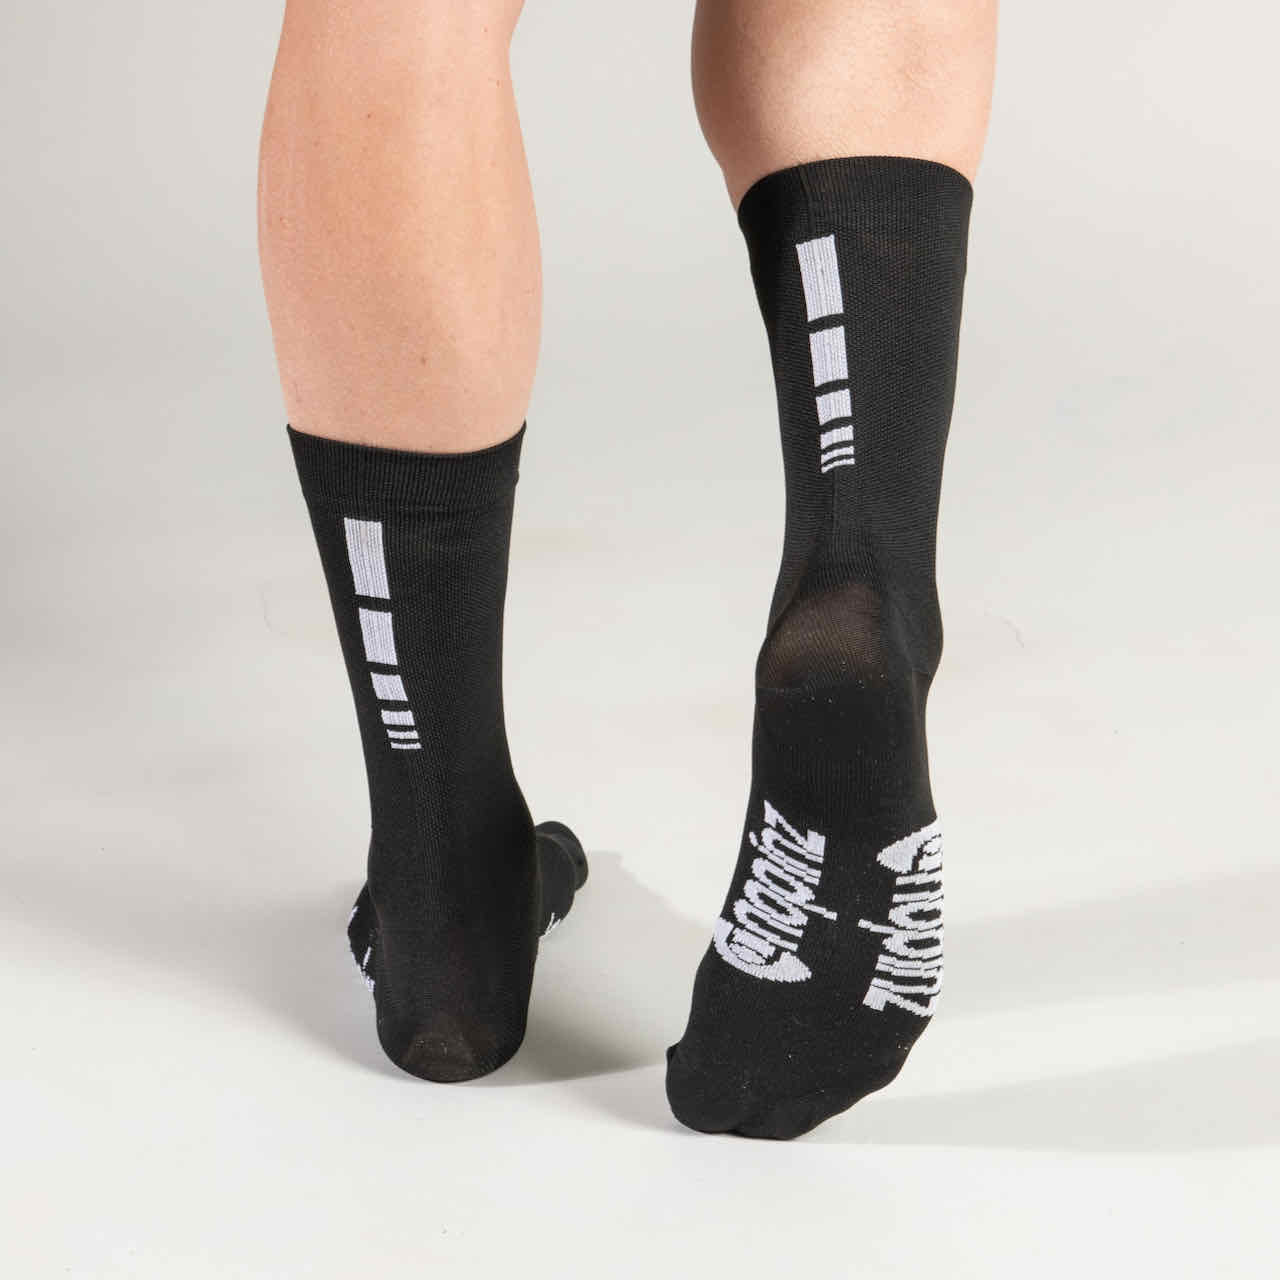 Cool Dry Cycling Socks - Black - Nopinz